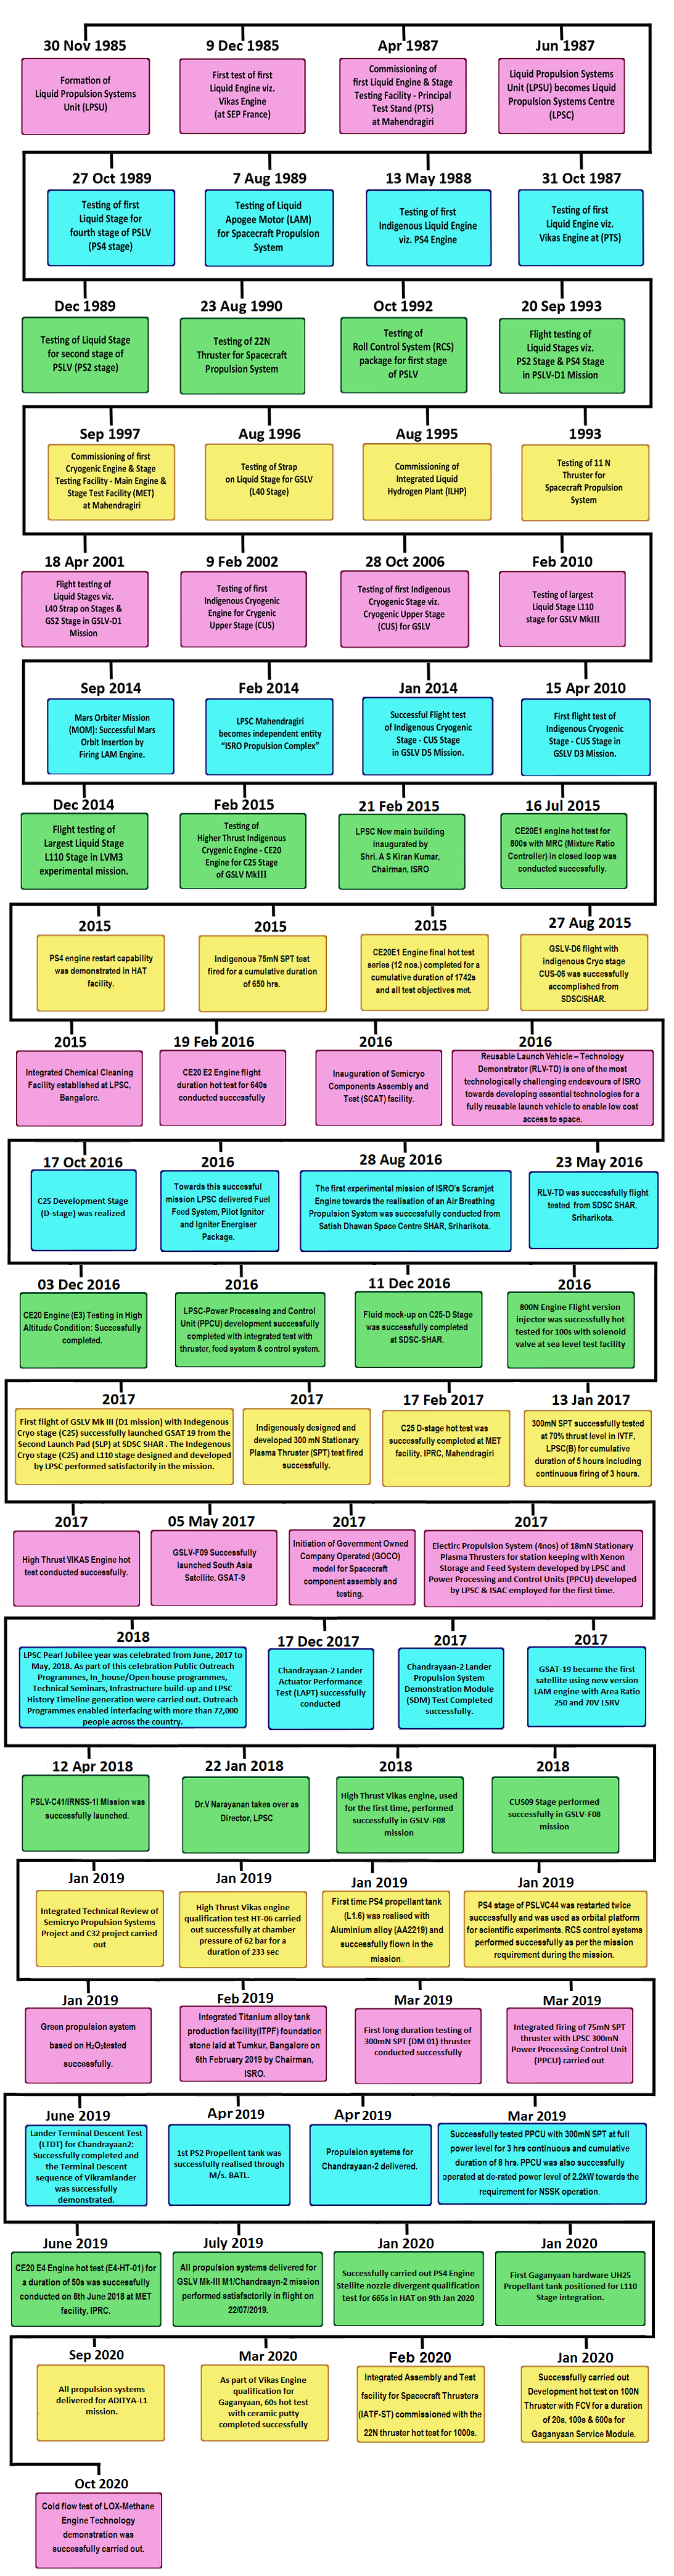 Timeline_en_2021.png